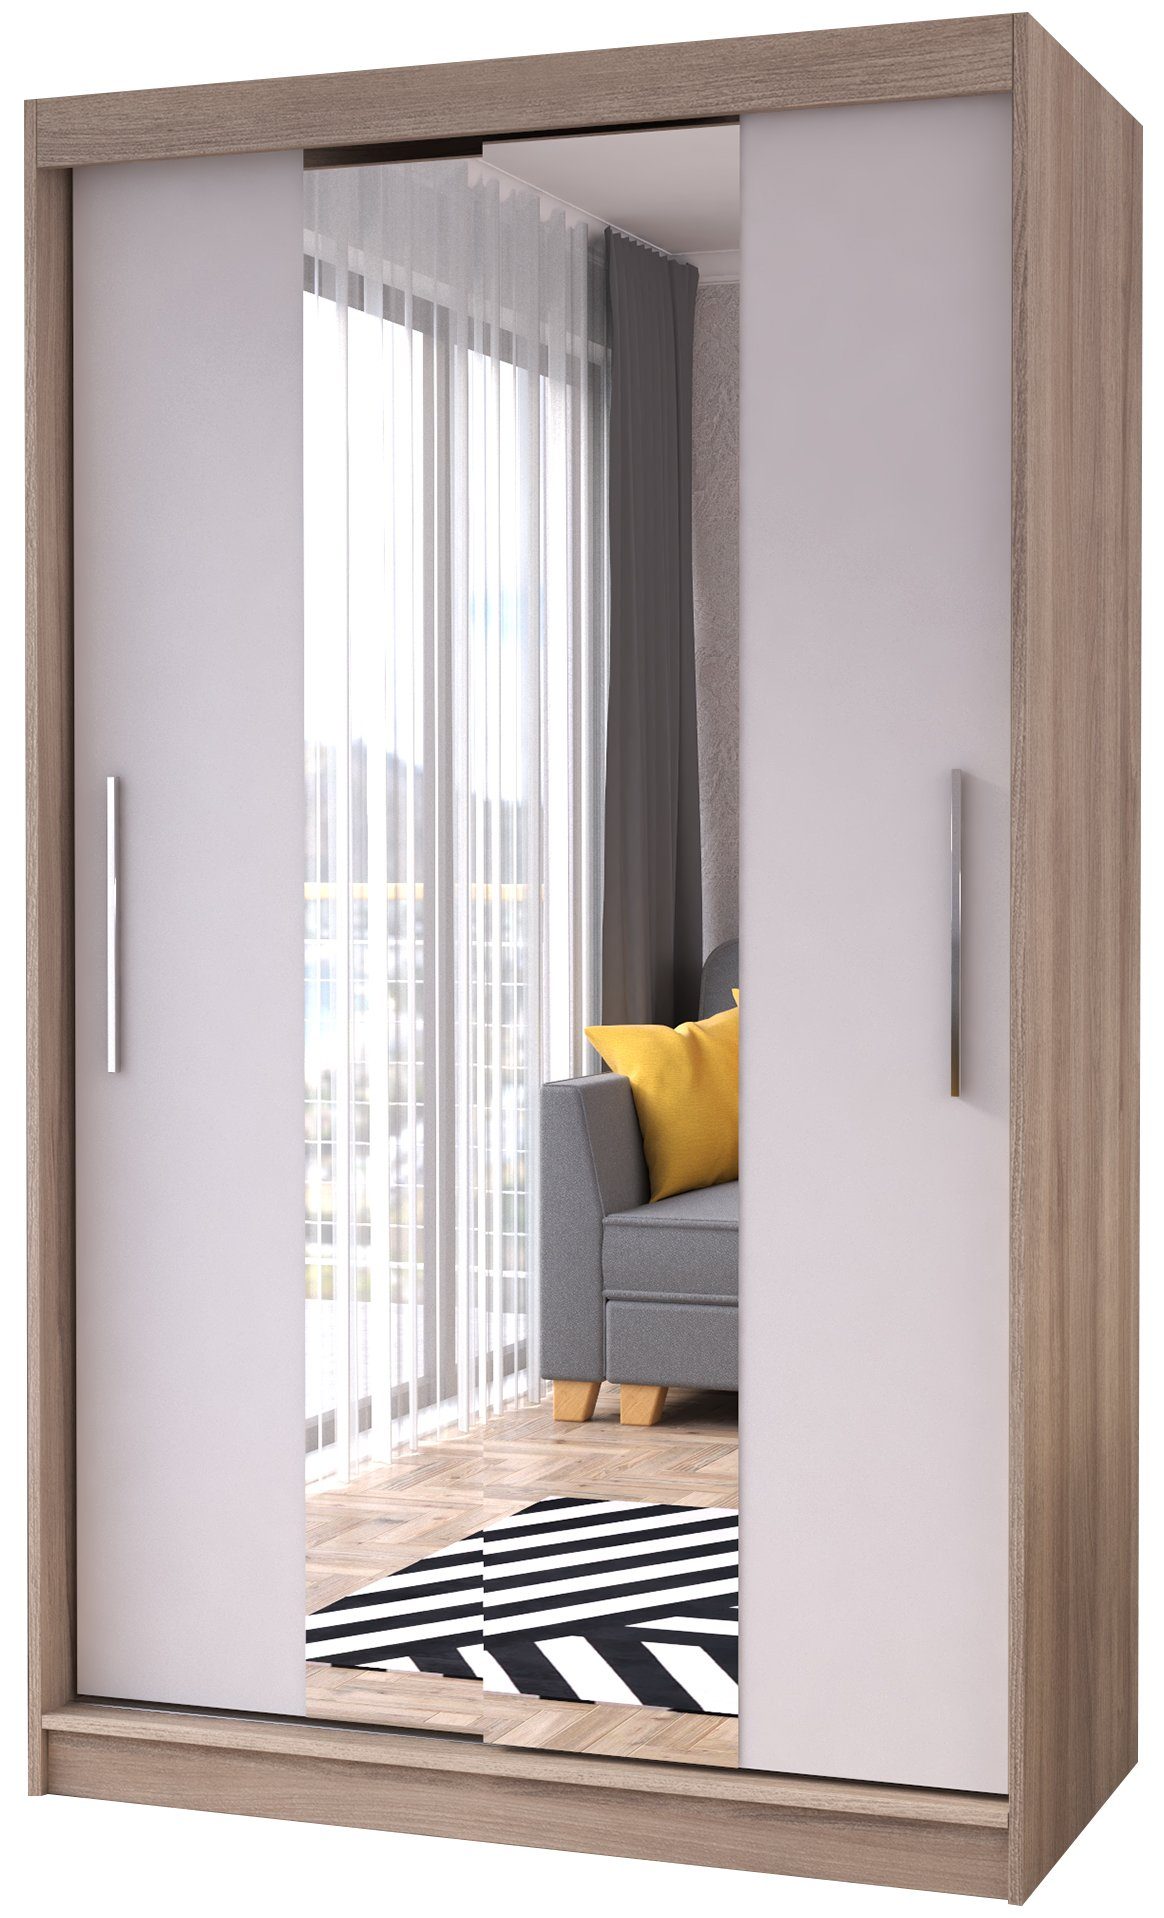 120x200 mittig Eichenholzo Schwebetürenschrank mit Polini eiche-weiß Prime (Mittelspiegel) Spiegel Home Schwebetürenschrank Spiegel Eiche-weiß Comfort | (mittelspiegel)